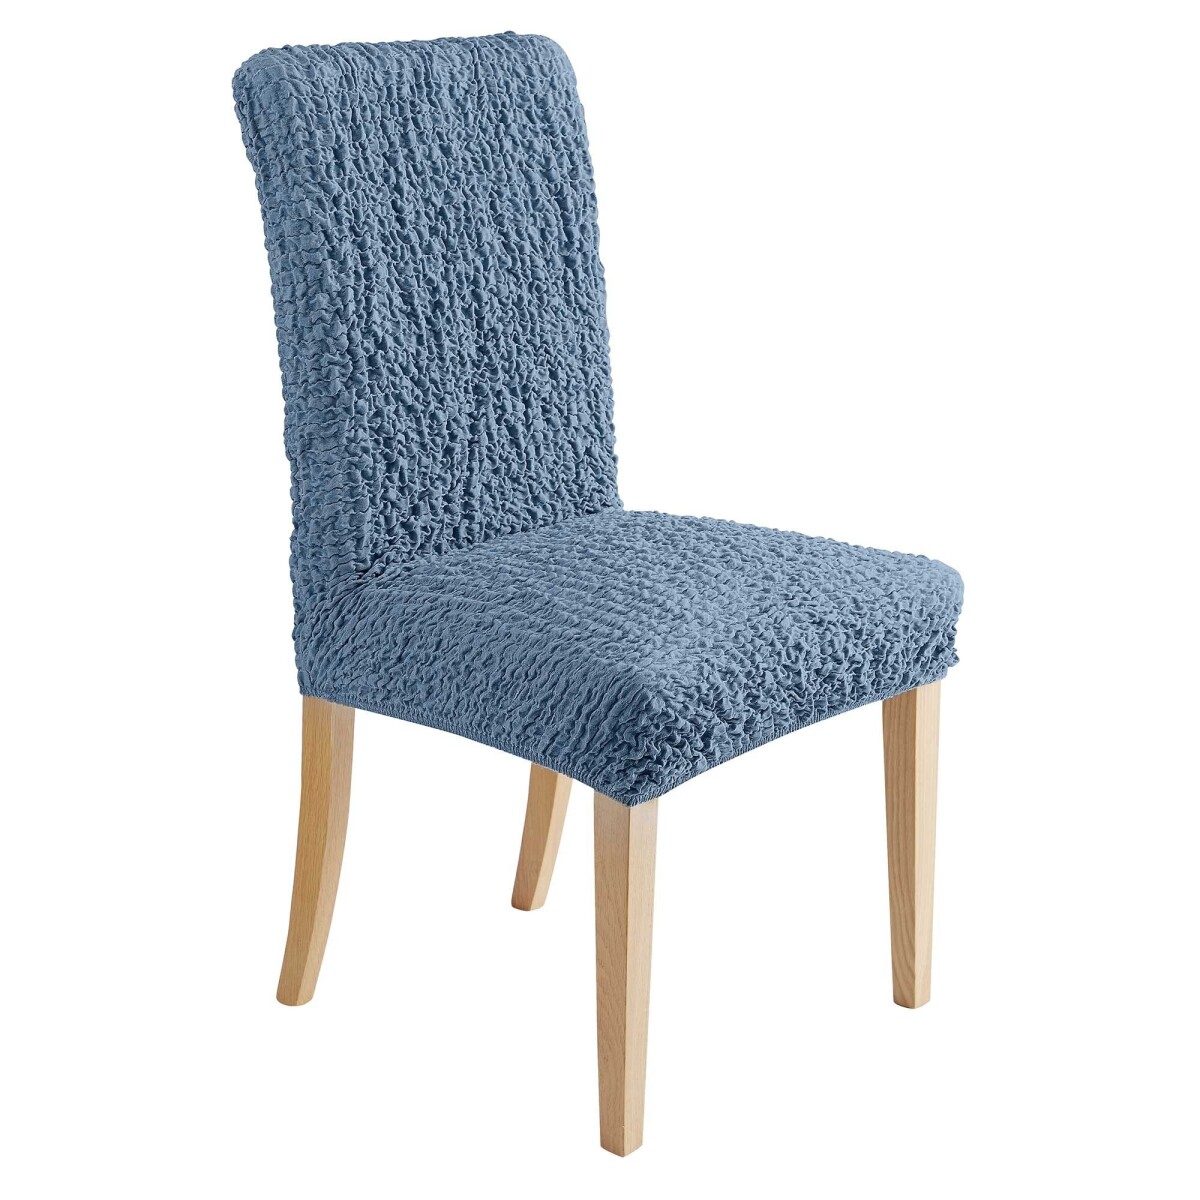 Blancheporte Extra pružný potah na židli, jednobarevný nebeská modrá sedákopěradlo